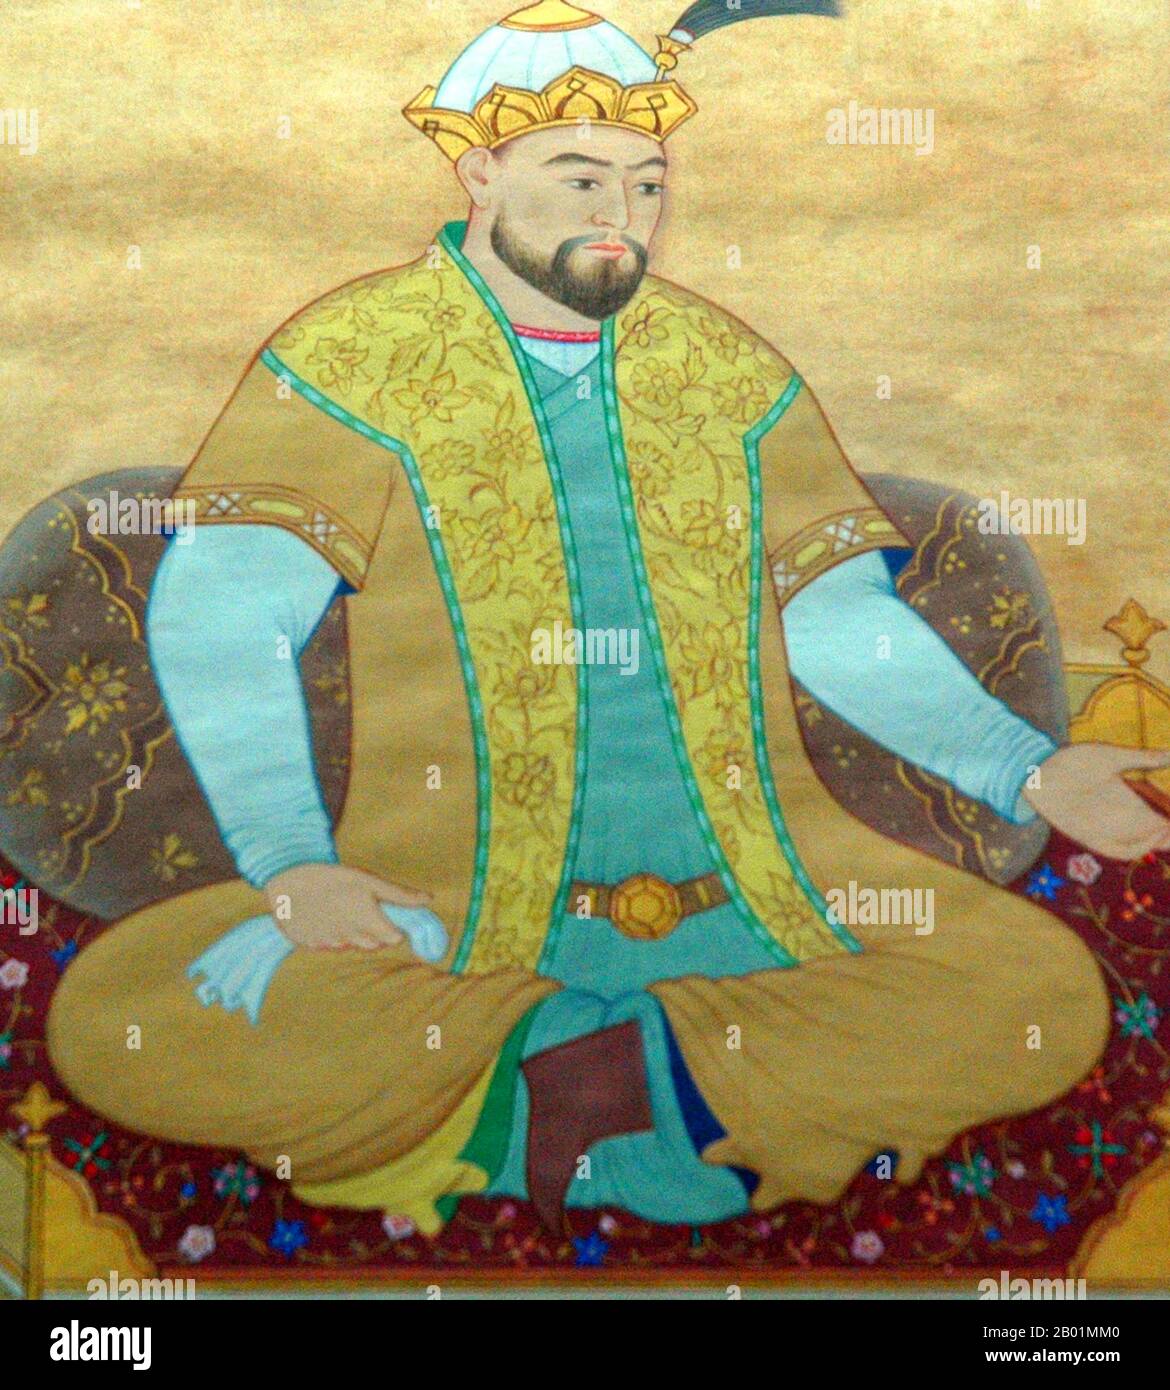 Iran/Uzbekistan: Ulugh Beg (22 marzo 1394 - 27 ottobre 1449), astronomo. Pittura in miniatura, c. 1453. Ulugh Beg era un sovrano timuride, nonché un astronomo, matematico e sultano. Il suo nome comunemente noto non è veramente un nome personale, ma può essere liberamente tradotto come "grande sovrano" ed era l'equivalente turco del titolo persiano-arabo di Tamerlano Amīr-e Kabīr. Il suo vero nome era Mīrzā Mohammad Tāraghay bin Shāhrokh. Ulugh Beg fu notevole per il suo lavoro in matematica correlata all'astronomia, come la trigonometria e la geometria sferica. Costruì il grande osservatorio a Samarcanda, tra il 1424 e il 1429. Foto Stock